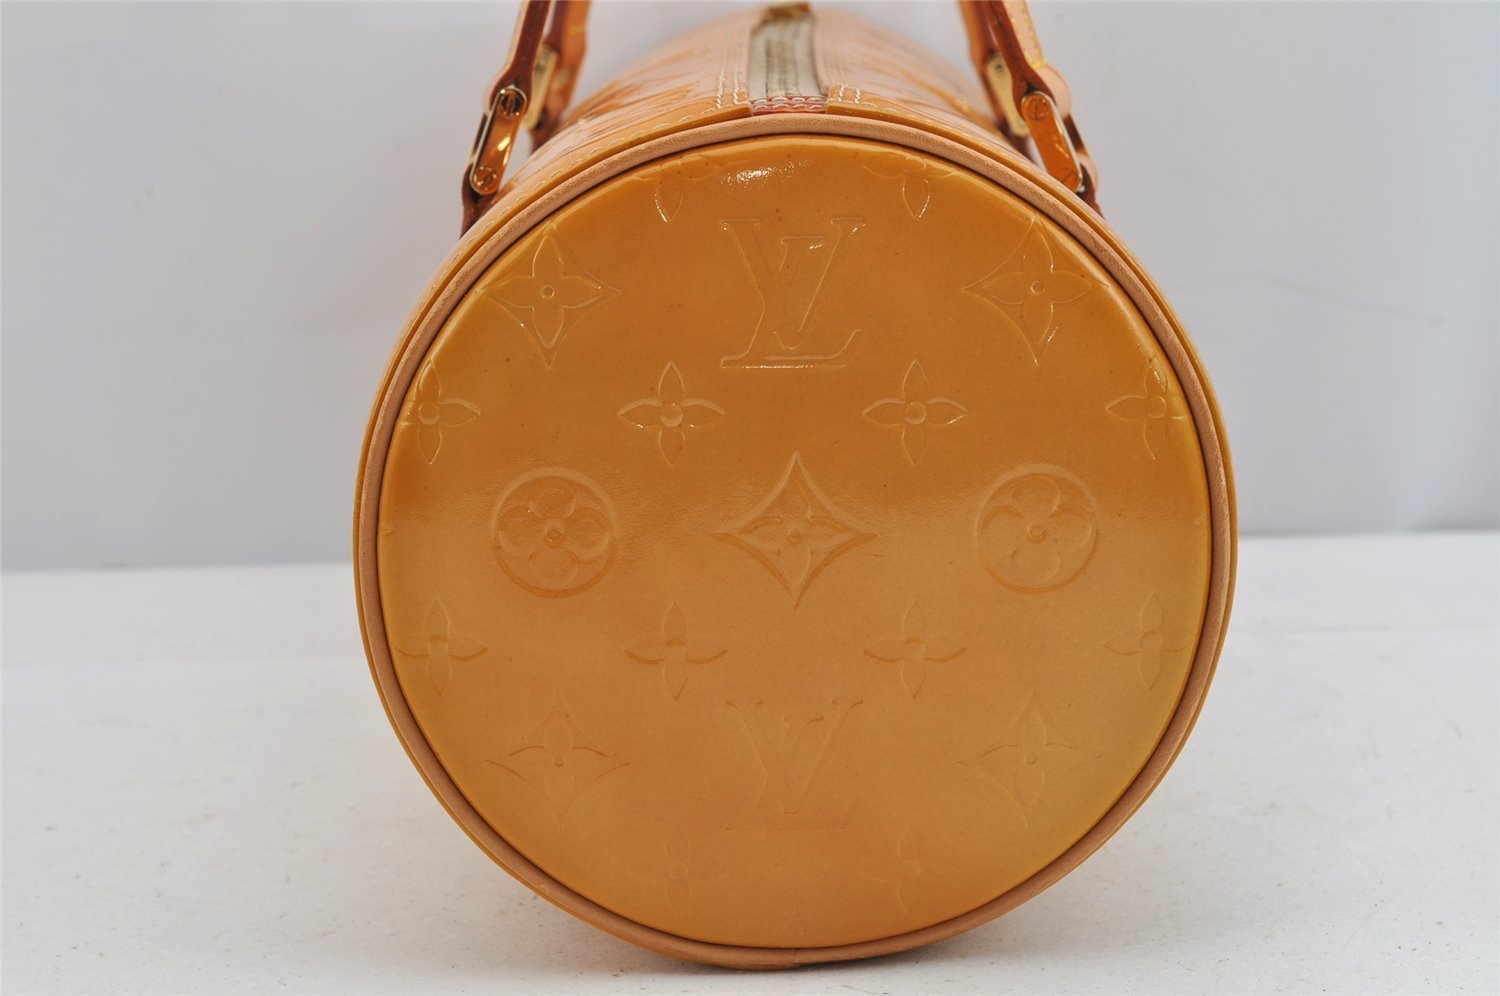 Authentic Louis Vuitton Vernis Bedford Hand Bag Yellow Beige M91006 LV 9236J